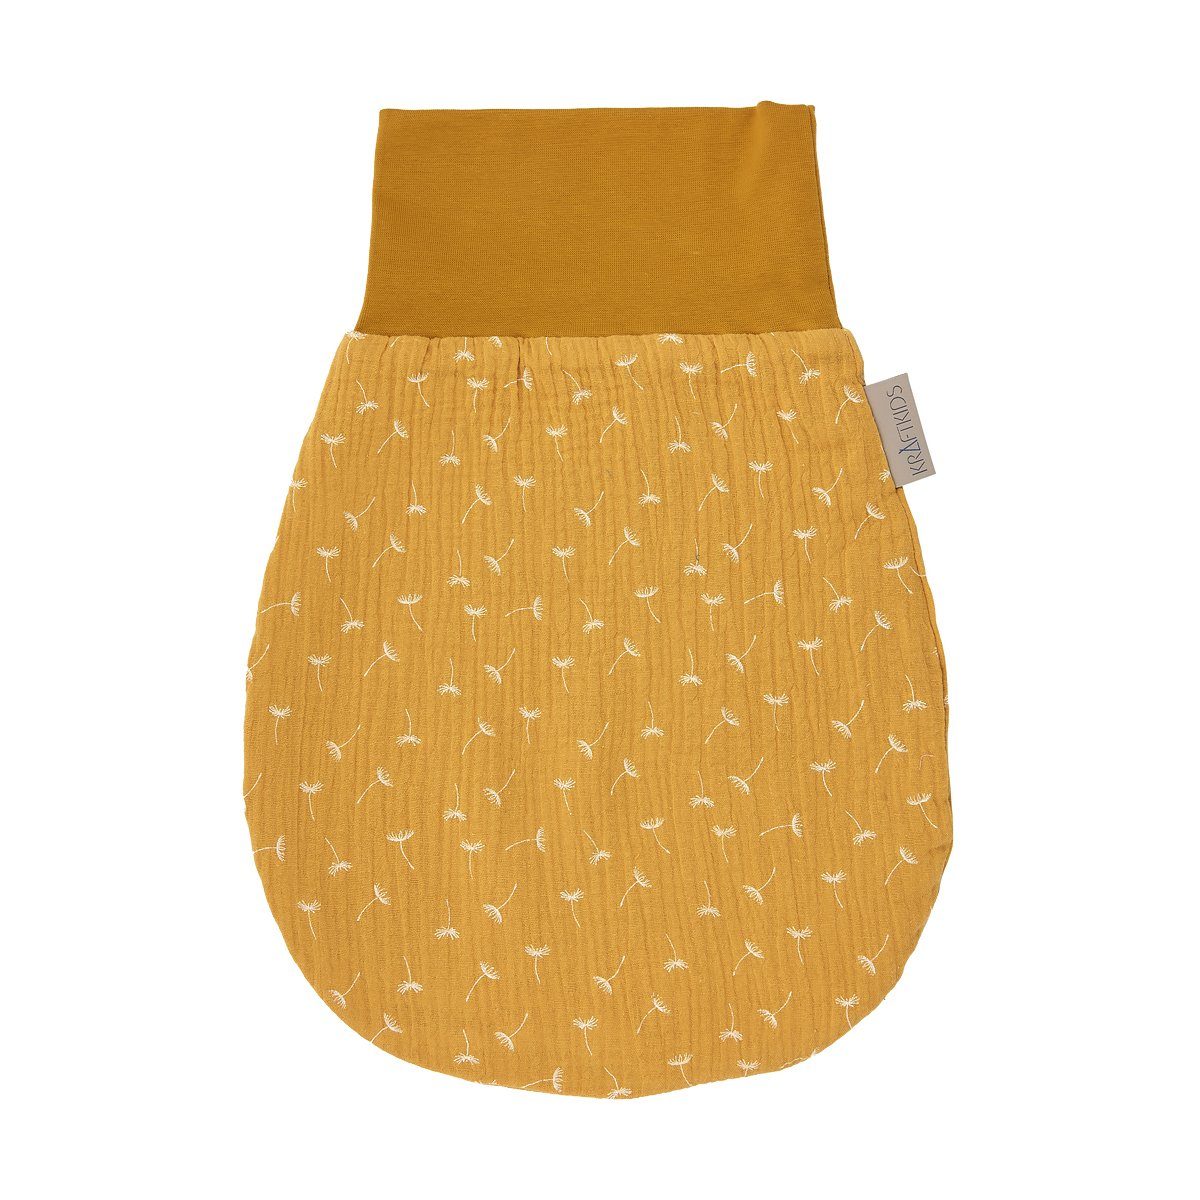 KraftKids Babyschlafsack Stoff, gelb Baumwolle, Sommer/Frühling-Variante, Stoff hochwärtiger zwei Musselin Pusteblumen, 100% Schichten